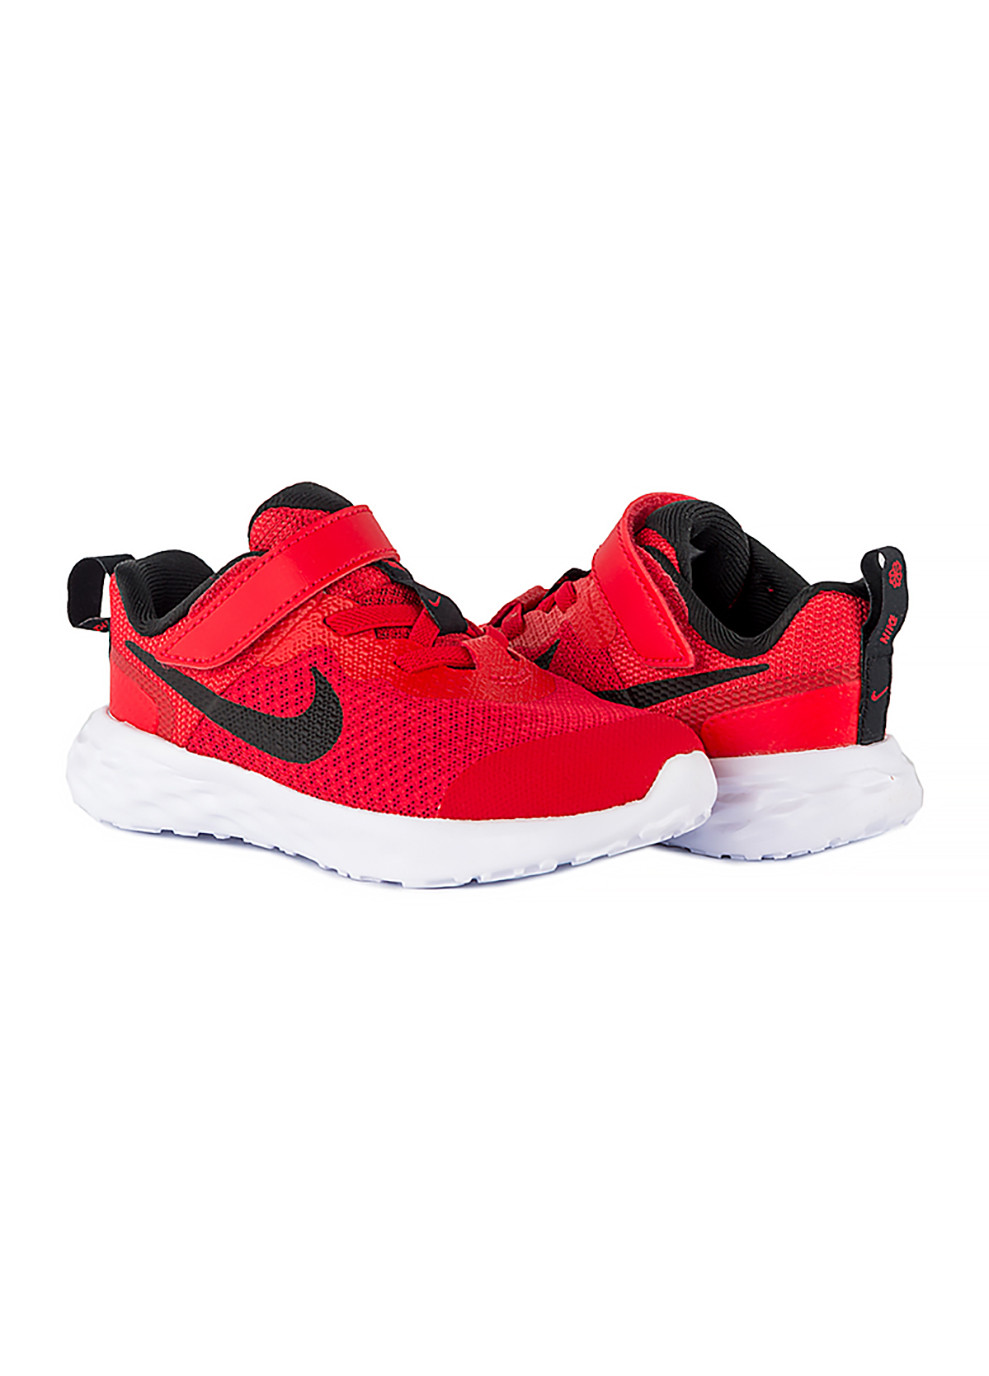 Красные демисезонные детские кроссовки revolution 6 nn (tdv) красный Nike